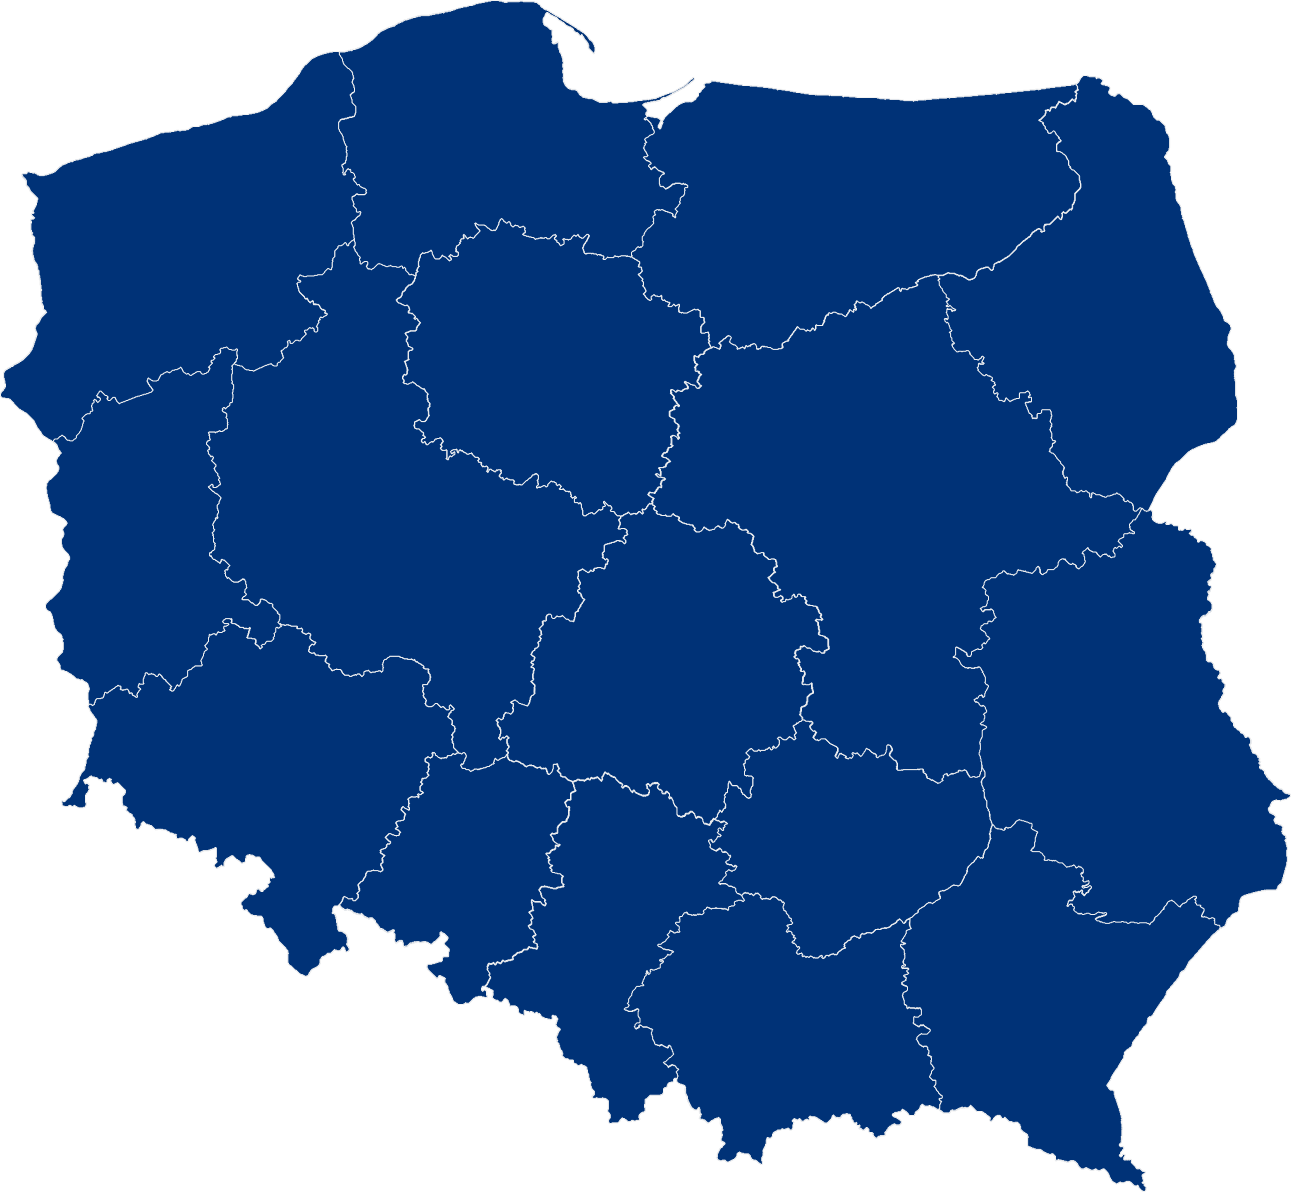 serwis krajowy - pks gdańsk-oliwa sa